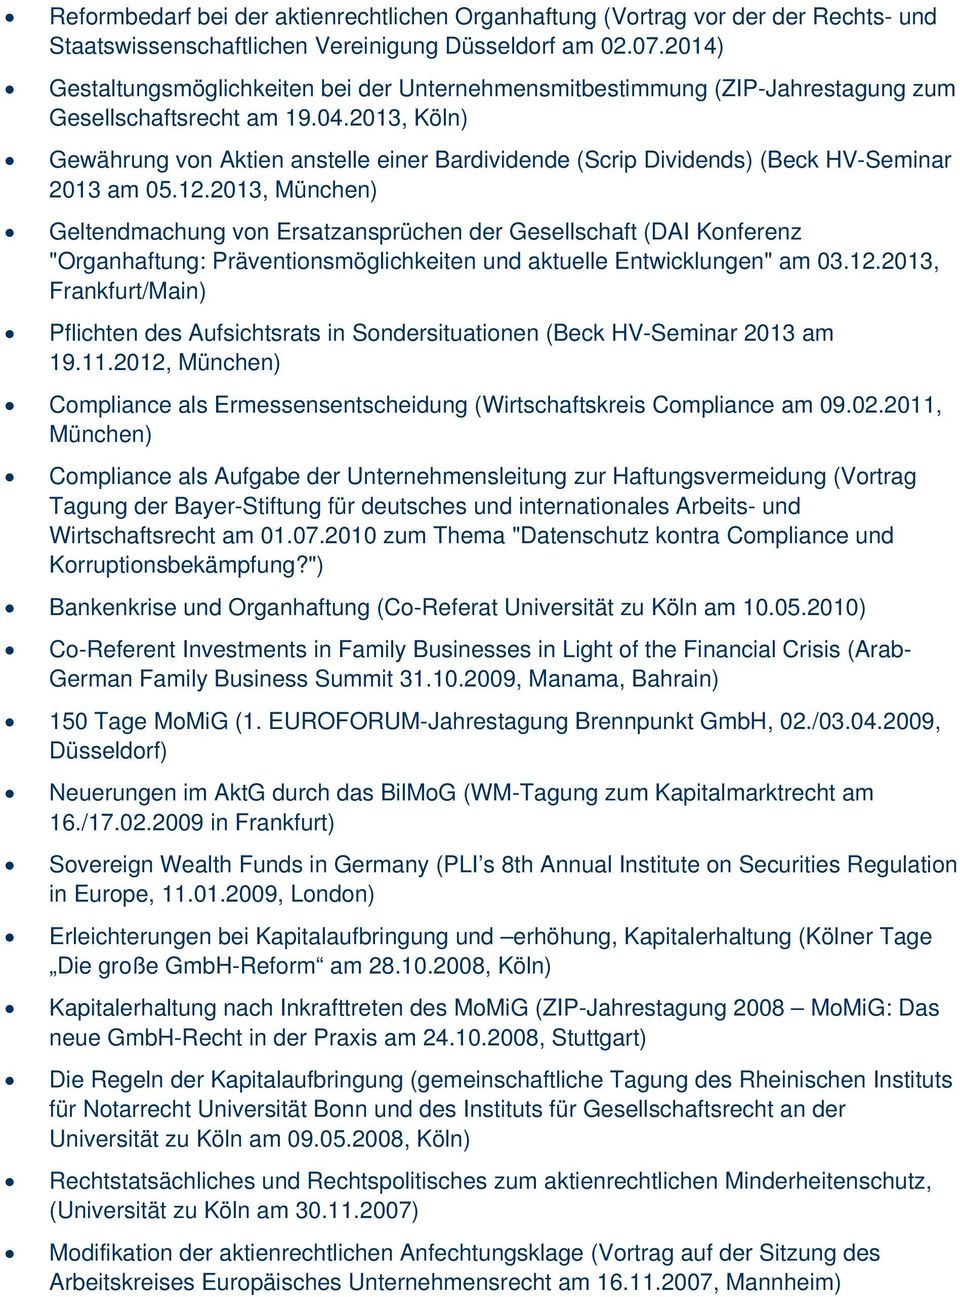 2013, Köln) Gewährung von Aktien anstelle einer Bardividende (Scrip Dividends) (Beck HV-Seminar 2013 am 05.12.